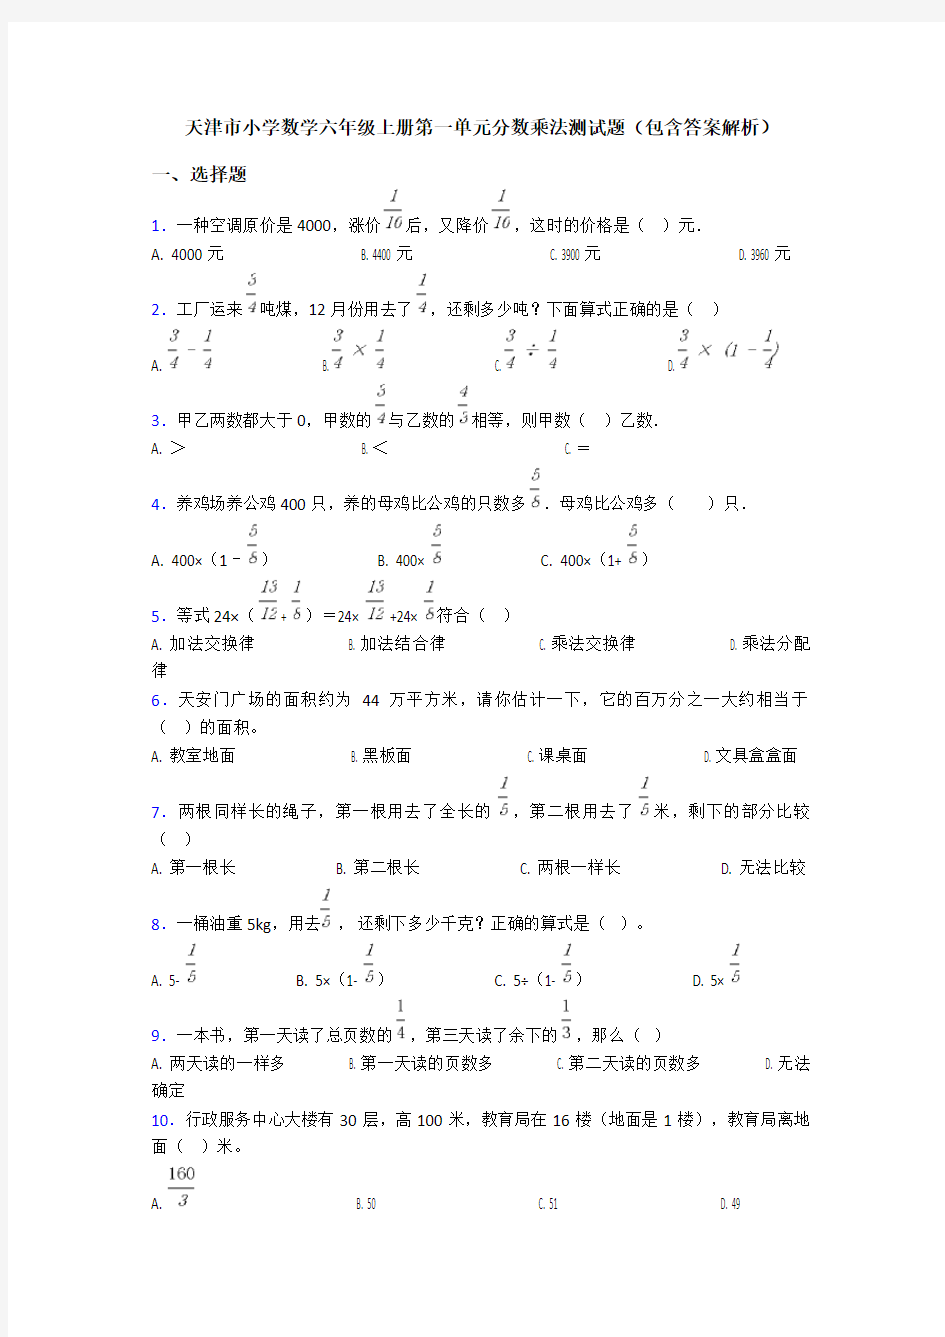 天津市小学数学六年级上册第一单元分数乘法测试题(包含答案解析)